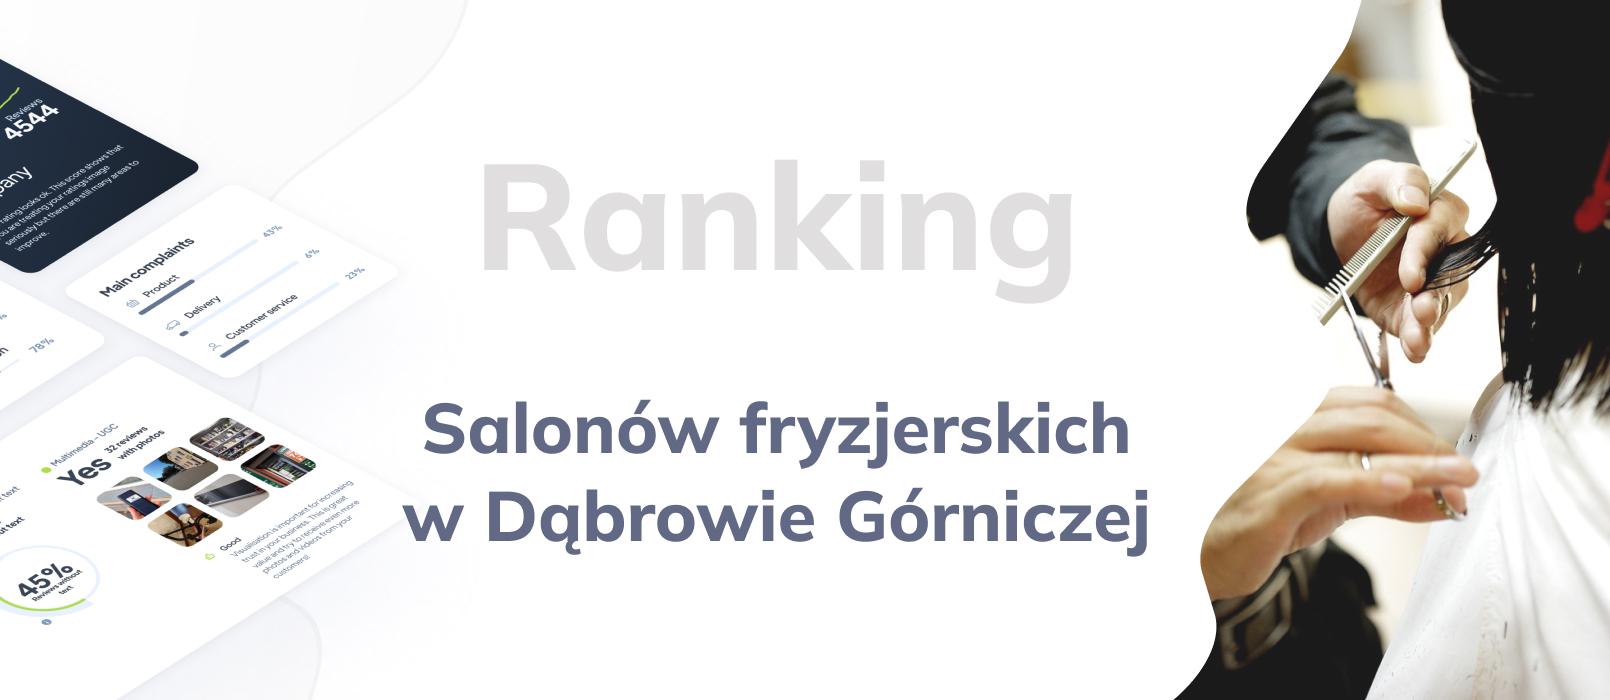 Salony fryzjerskie w Dąbrowie Górniczej - ranking TOP 10